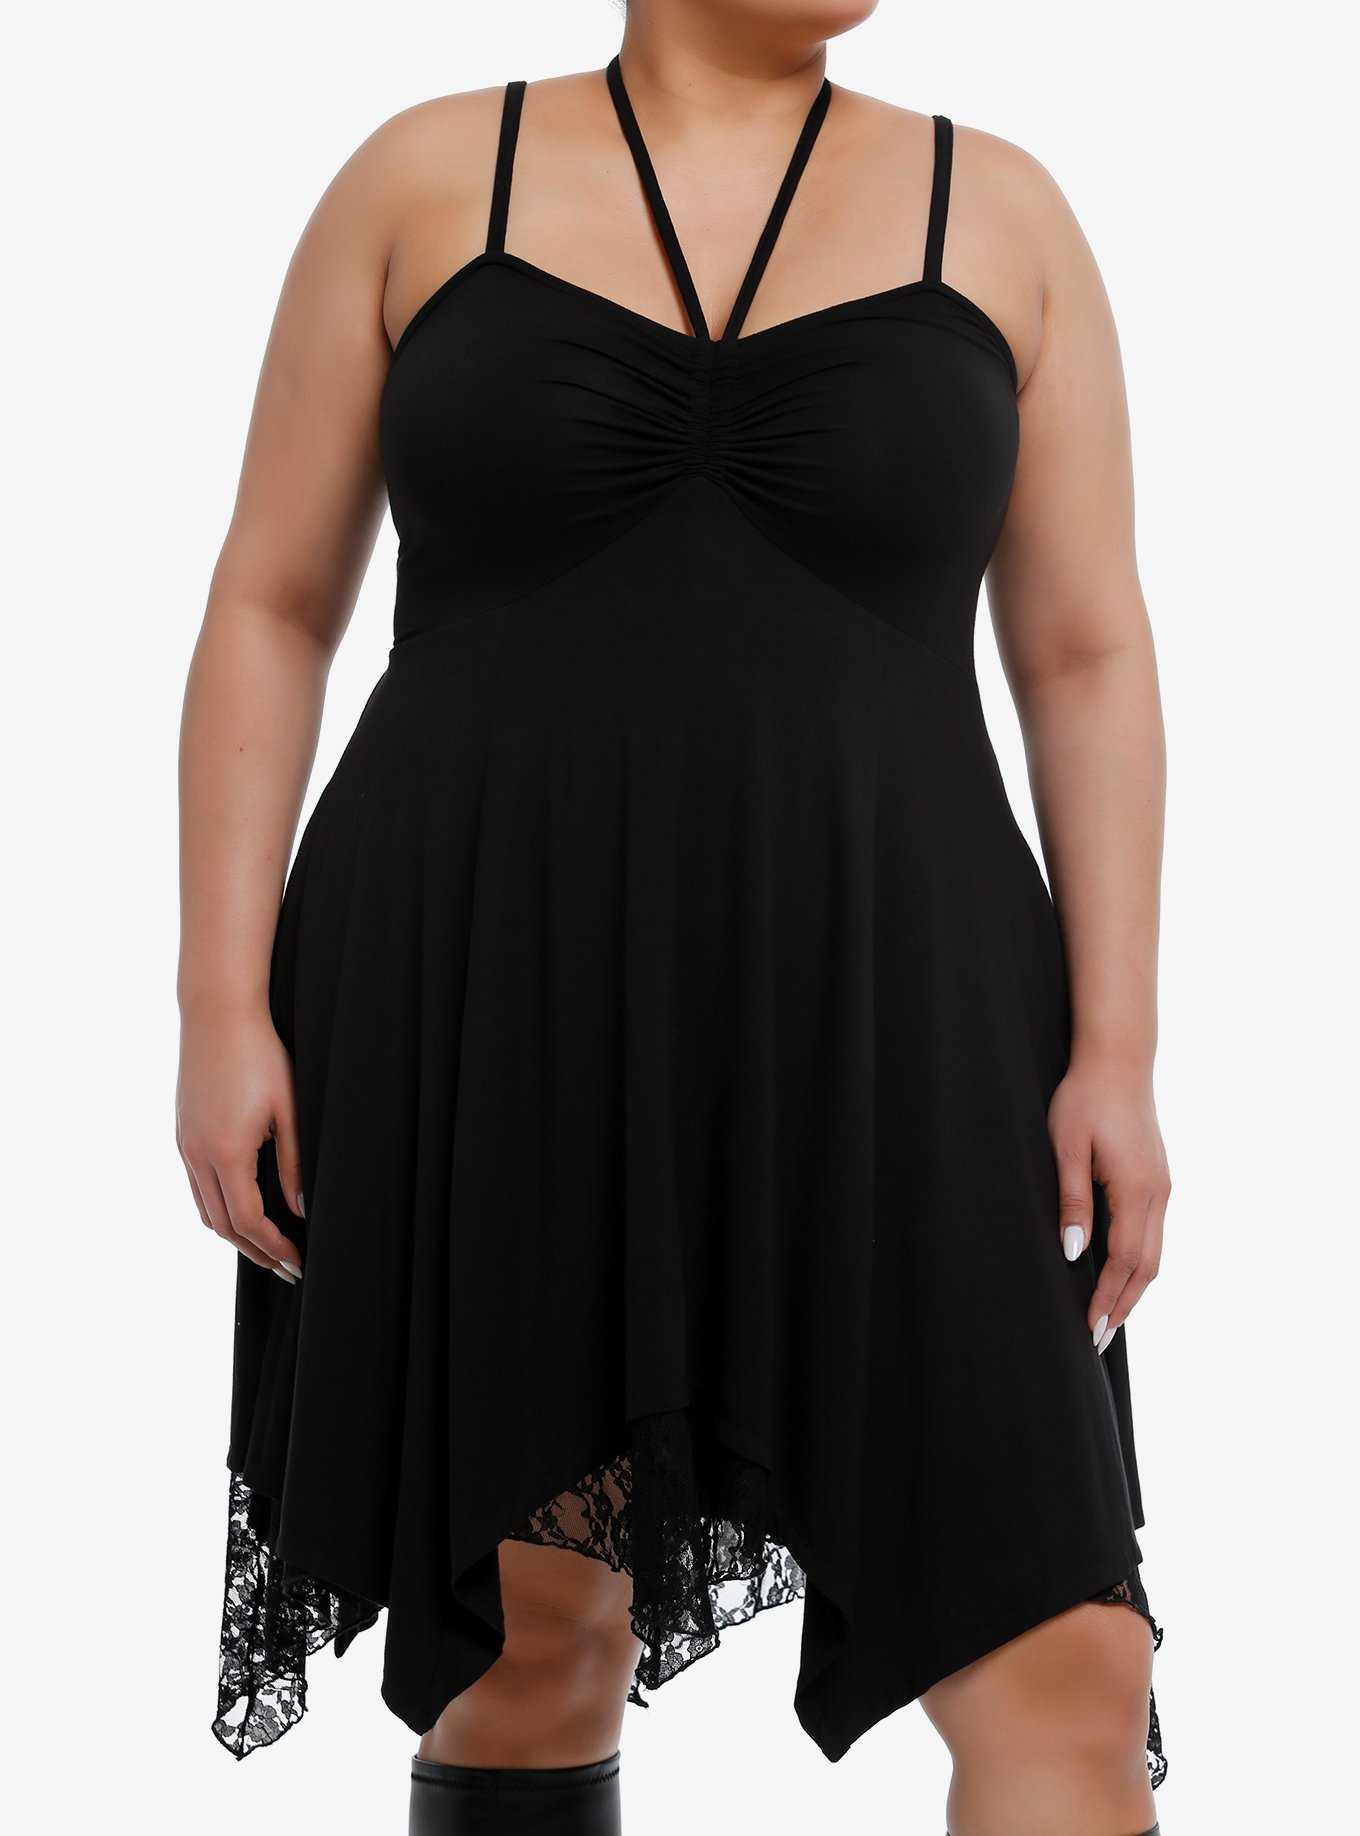 Plus Size Little Black Dresses